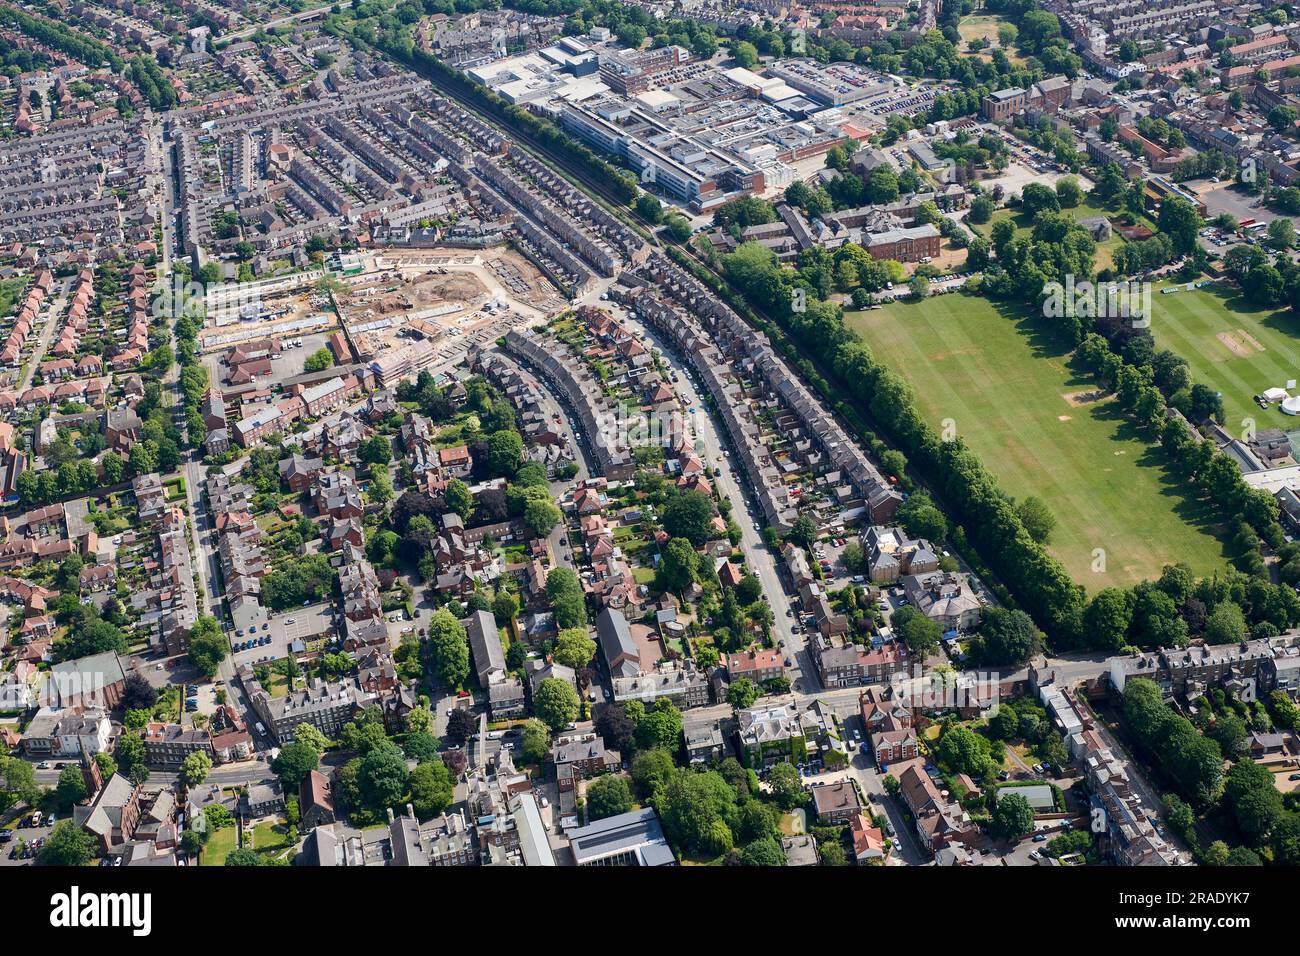 Una vista aerea della storica città di York, Inghilterra settentrionale, North Yorkshire, Regno Unito, che mostra strade di case con terrazza a nord della città Foto Stock